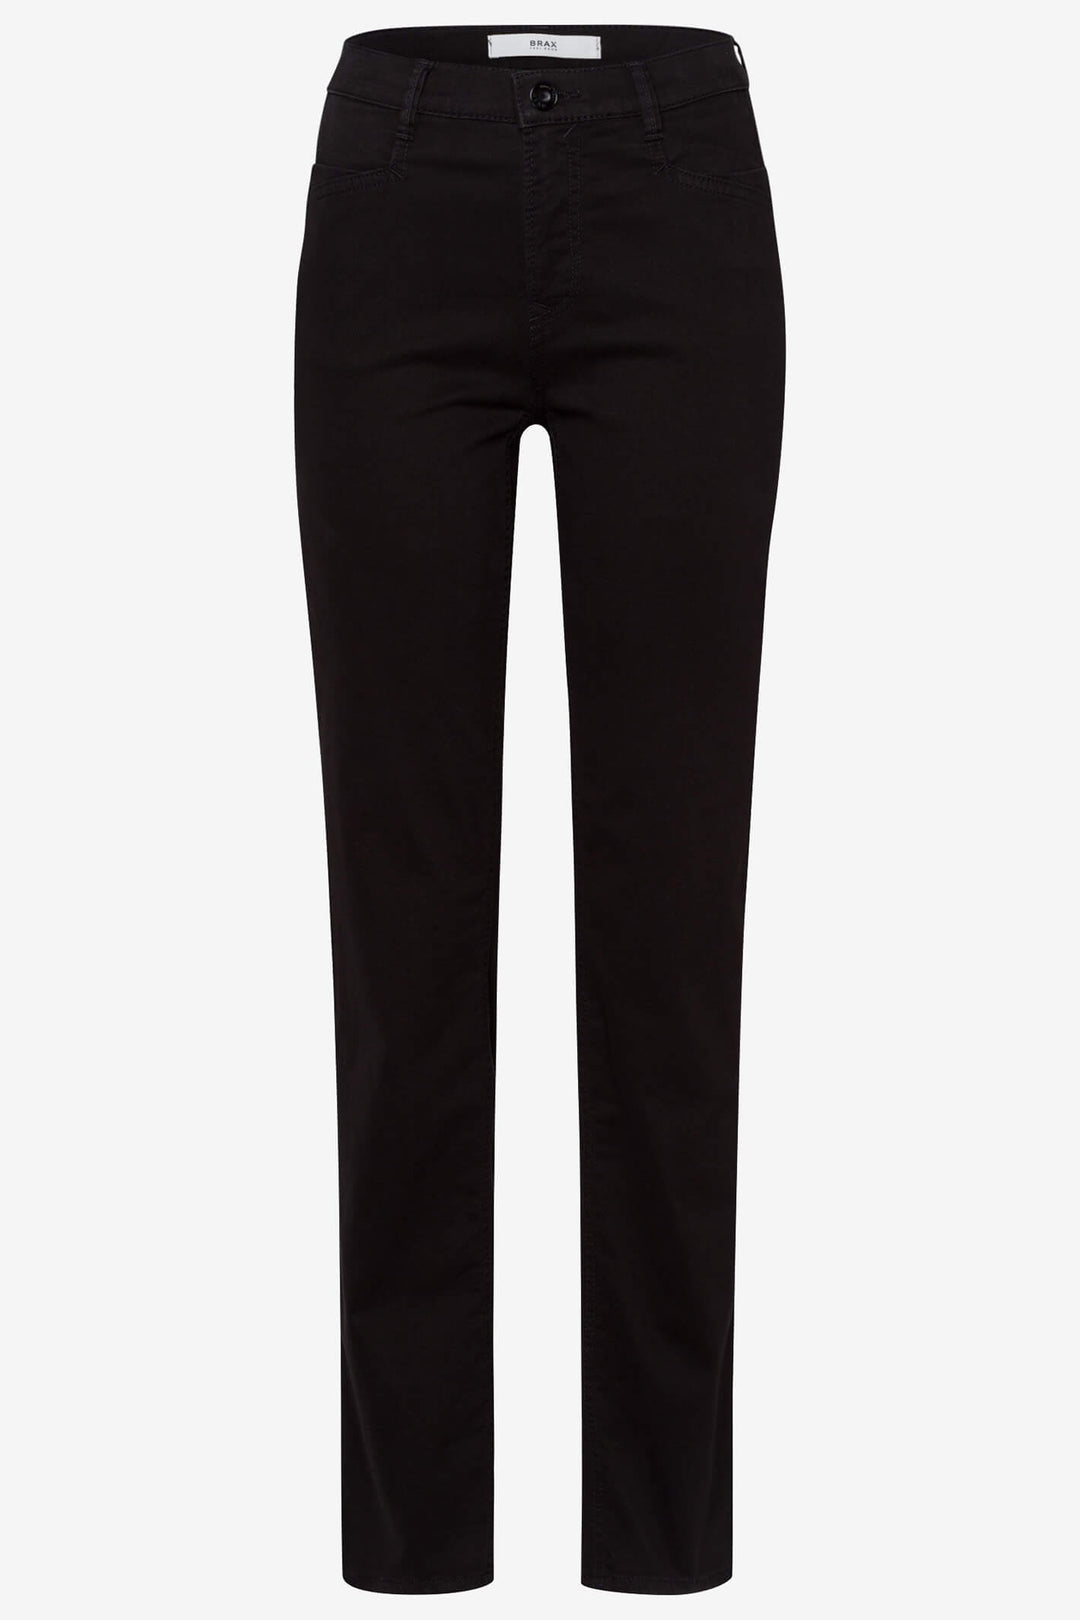 Brax Carola 79-1754 02 Black Thermo Jeans - Shirley Allum Boutique